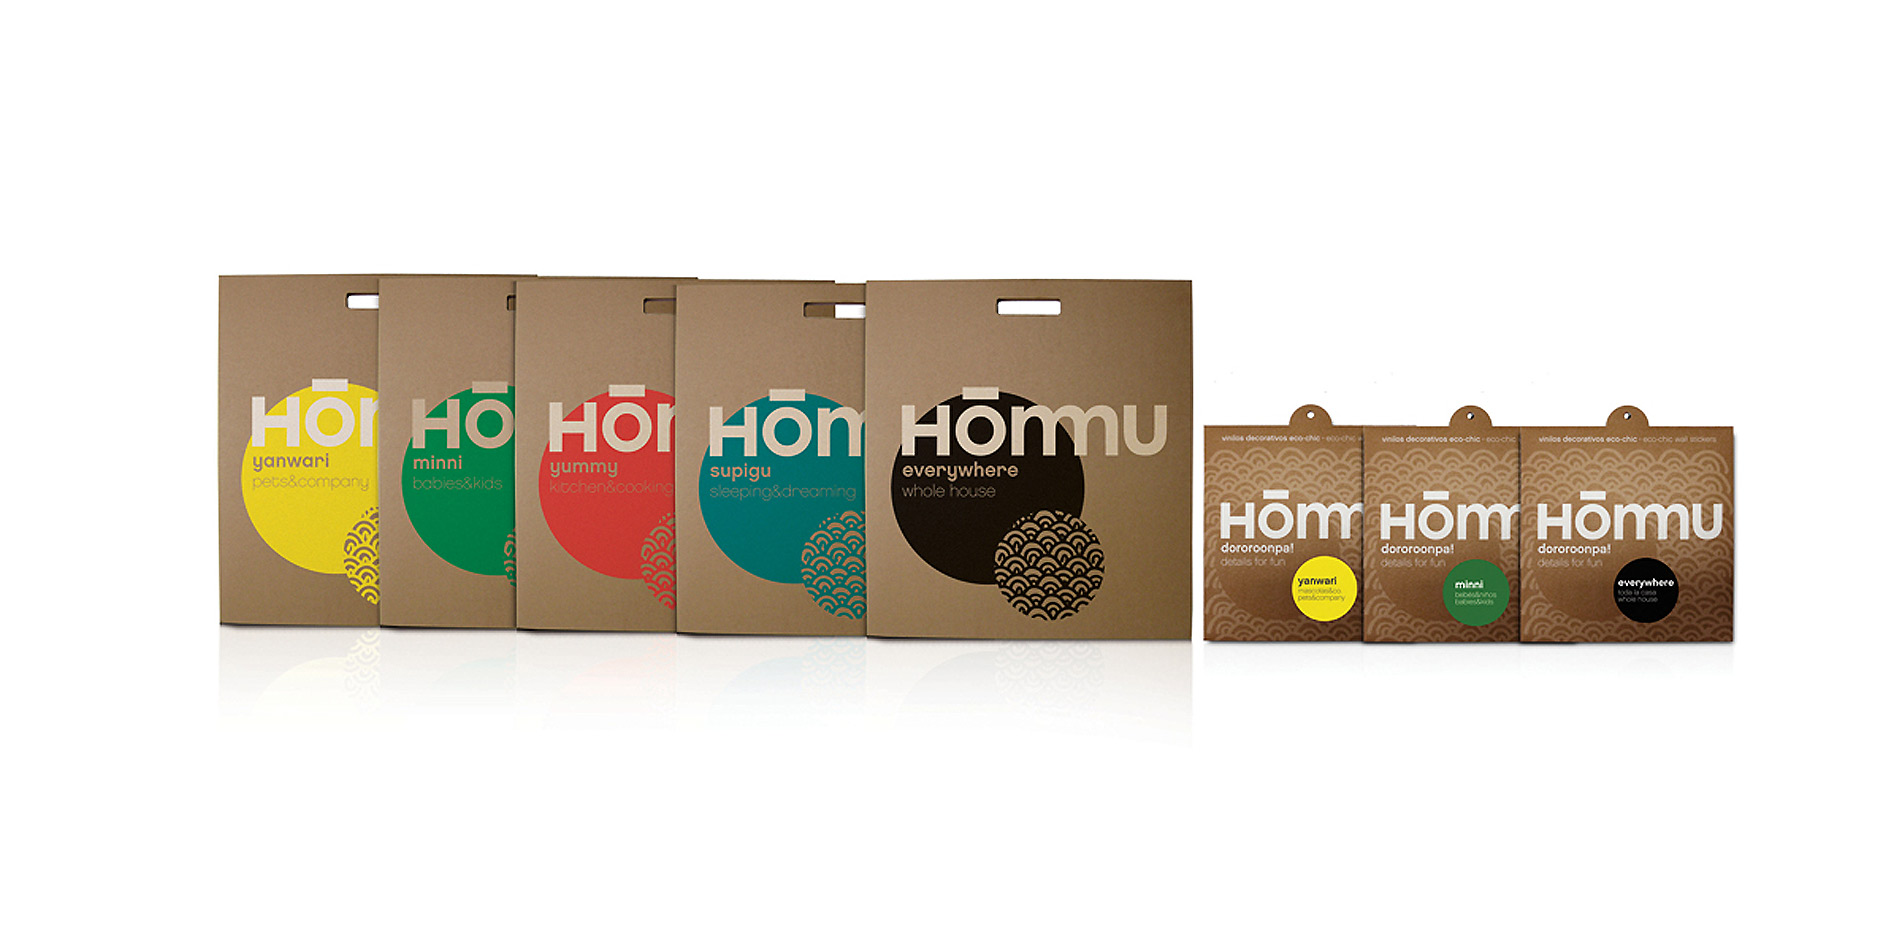 hommustudio_hommu_packaging_2